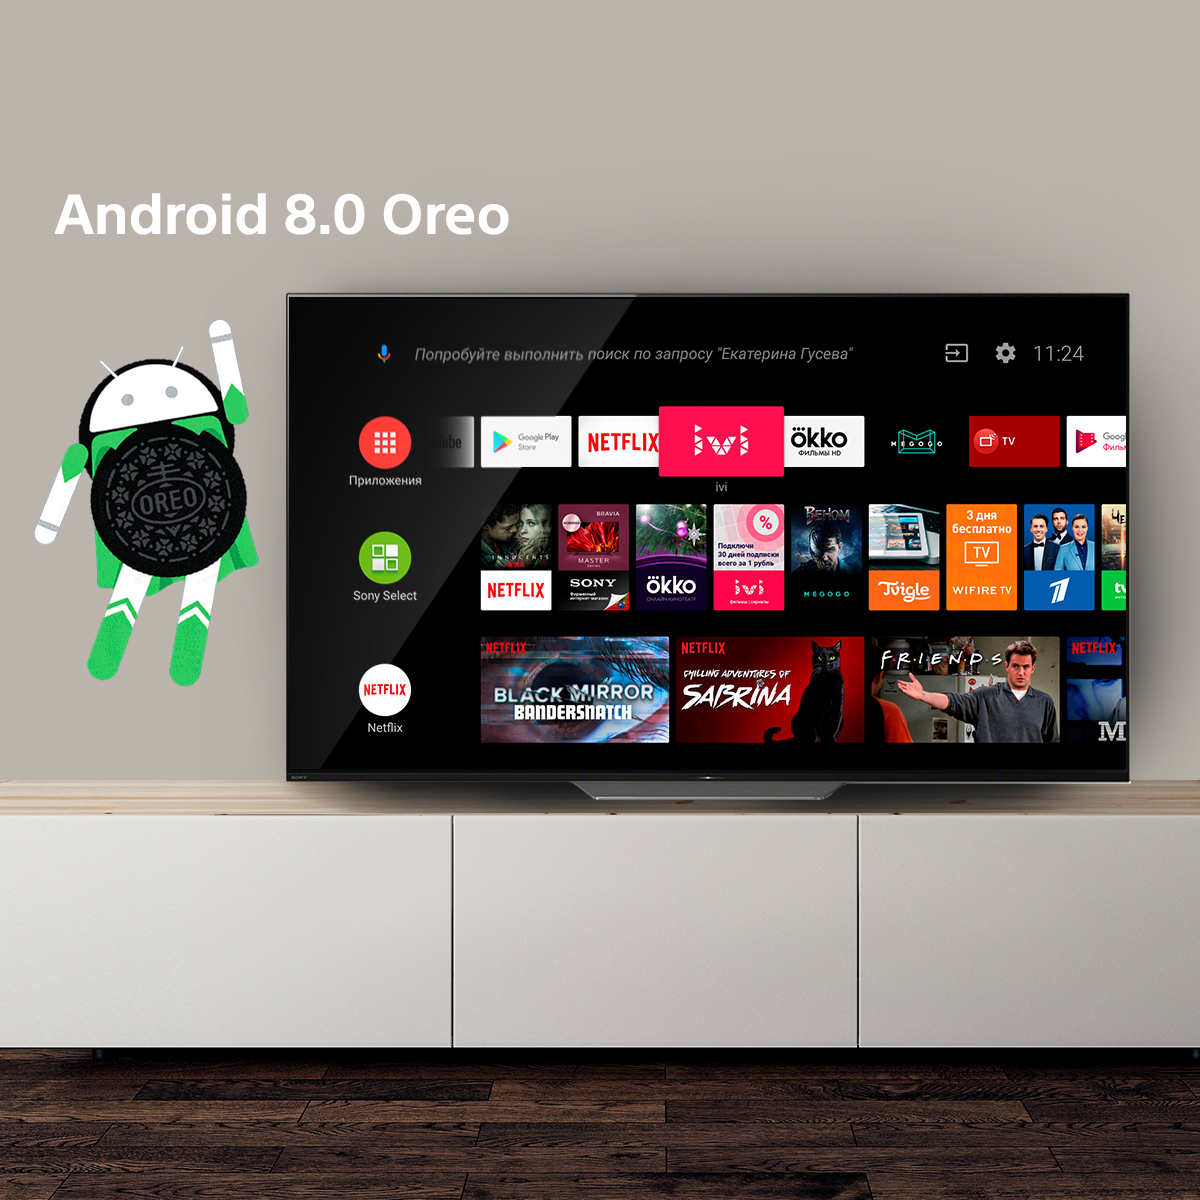 Телевизоры sony android. Sony Smart TV Android. Android TV 9.0. Android TV Интерфейс. Андроид ТВ сони бравиа.